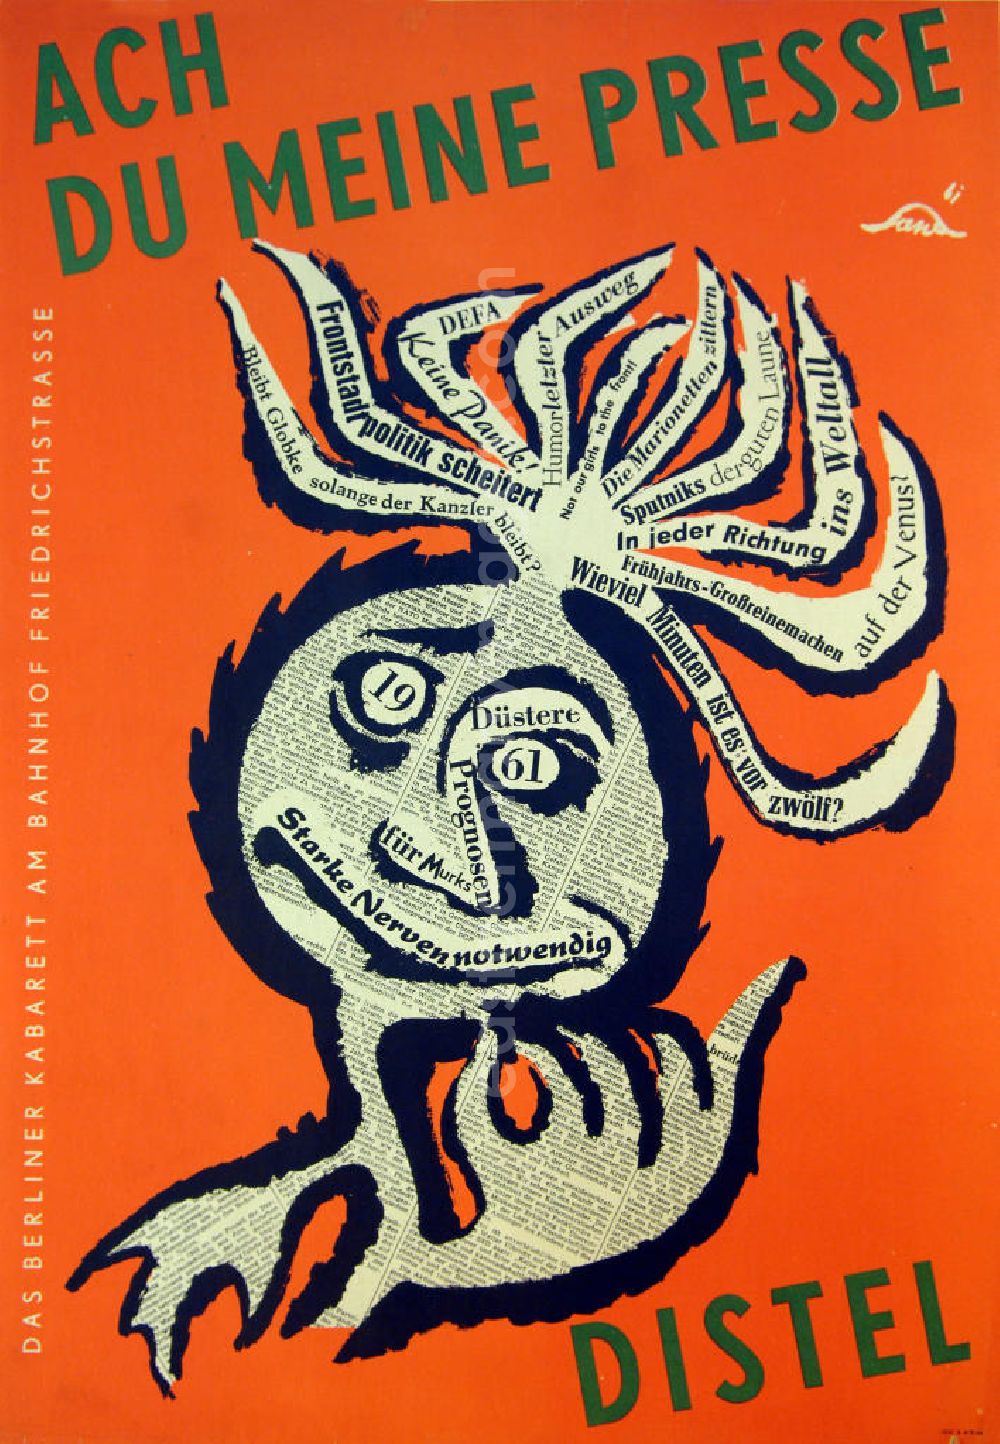 GDR picture archive: Berlin - Plakat von Herbert Sandberg Ach du meine Presse für das berliner Kabarett 'Distel' aus dem Jahr 1961, 41,4x58,7cm. Auf orangenem Untergrund ist eine abstrahierte Distel mit Gesicht dargestellt, die Distel ist eine Collage aus Schlagzeilen und Zeitungsauschnitten, zusätzlich schwarz umrandet.